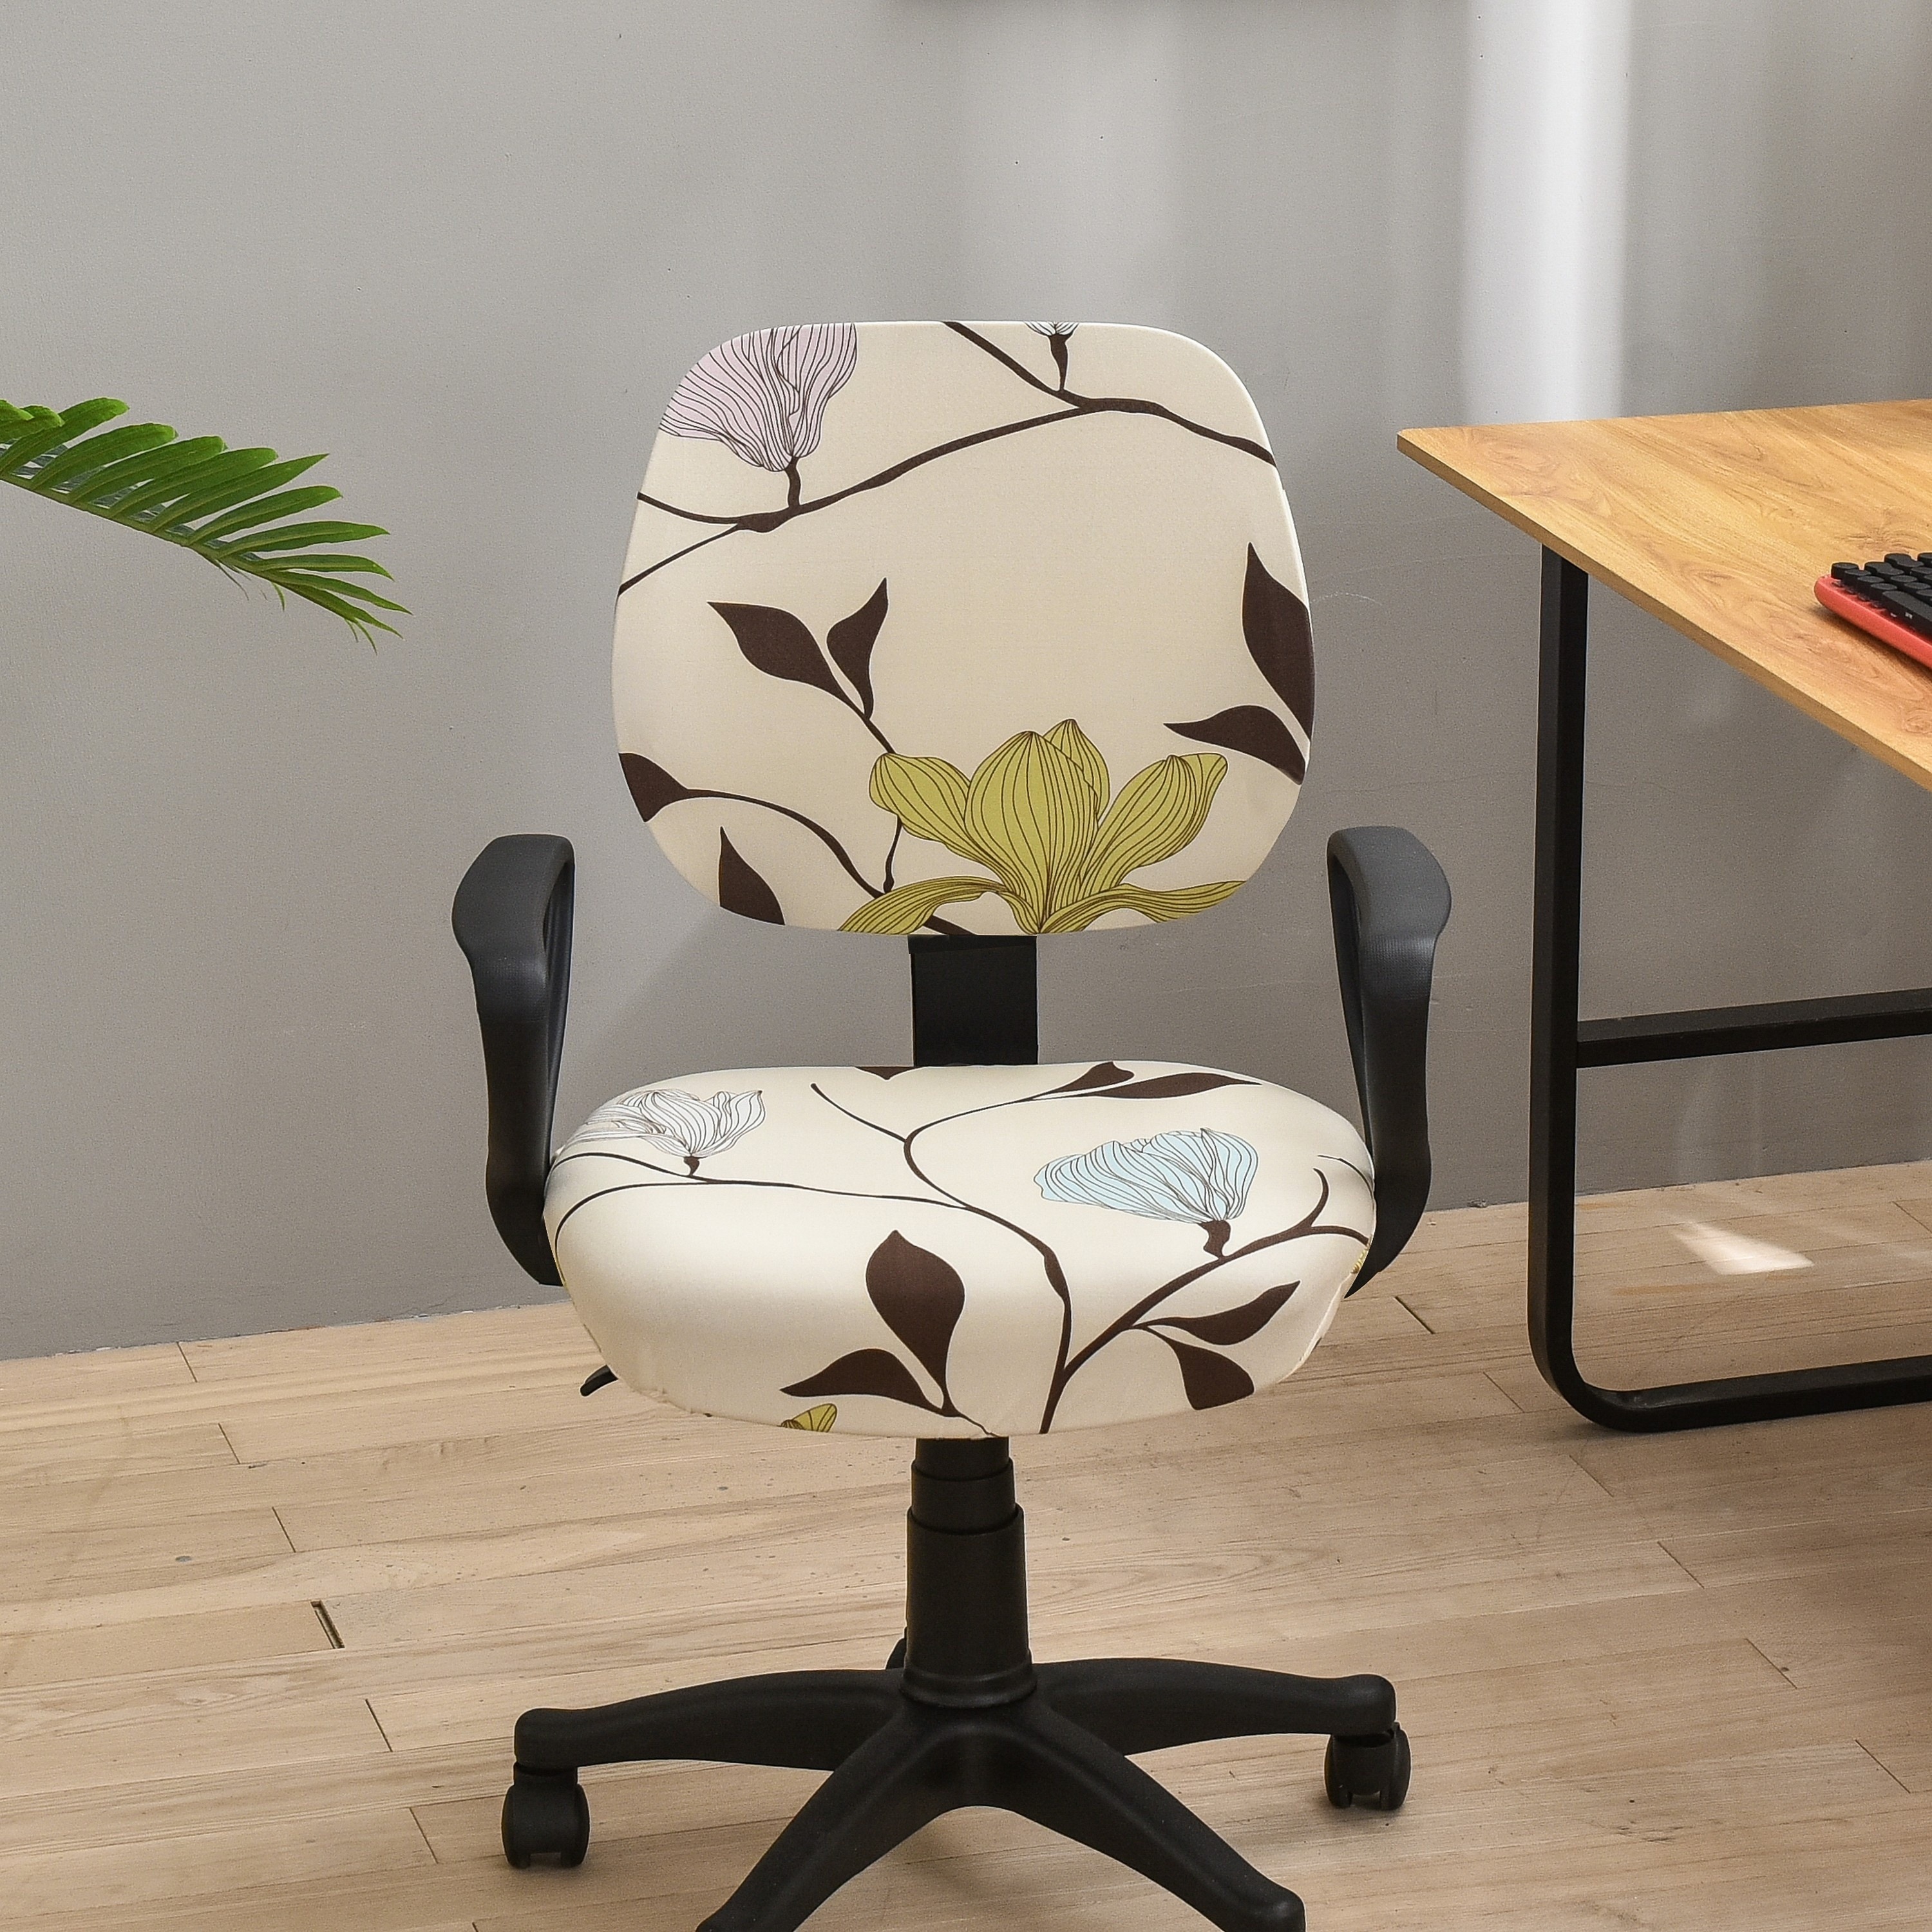 Funda para silla de oficina, funda universal protectora y elástica,  cubierta elástica para silla giratoria de Melaluxe